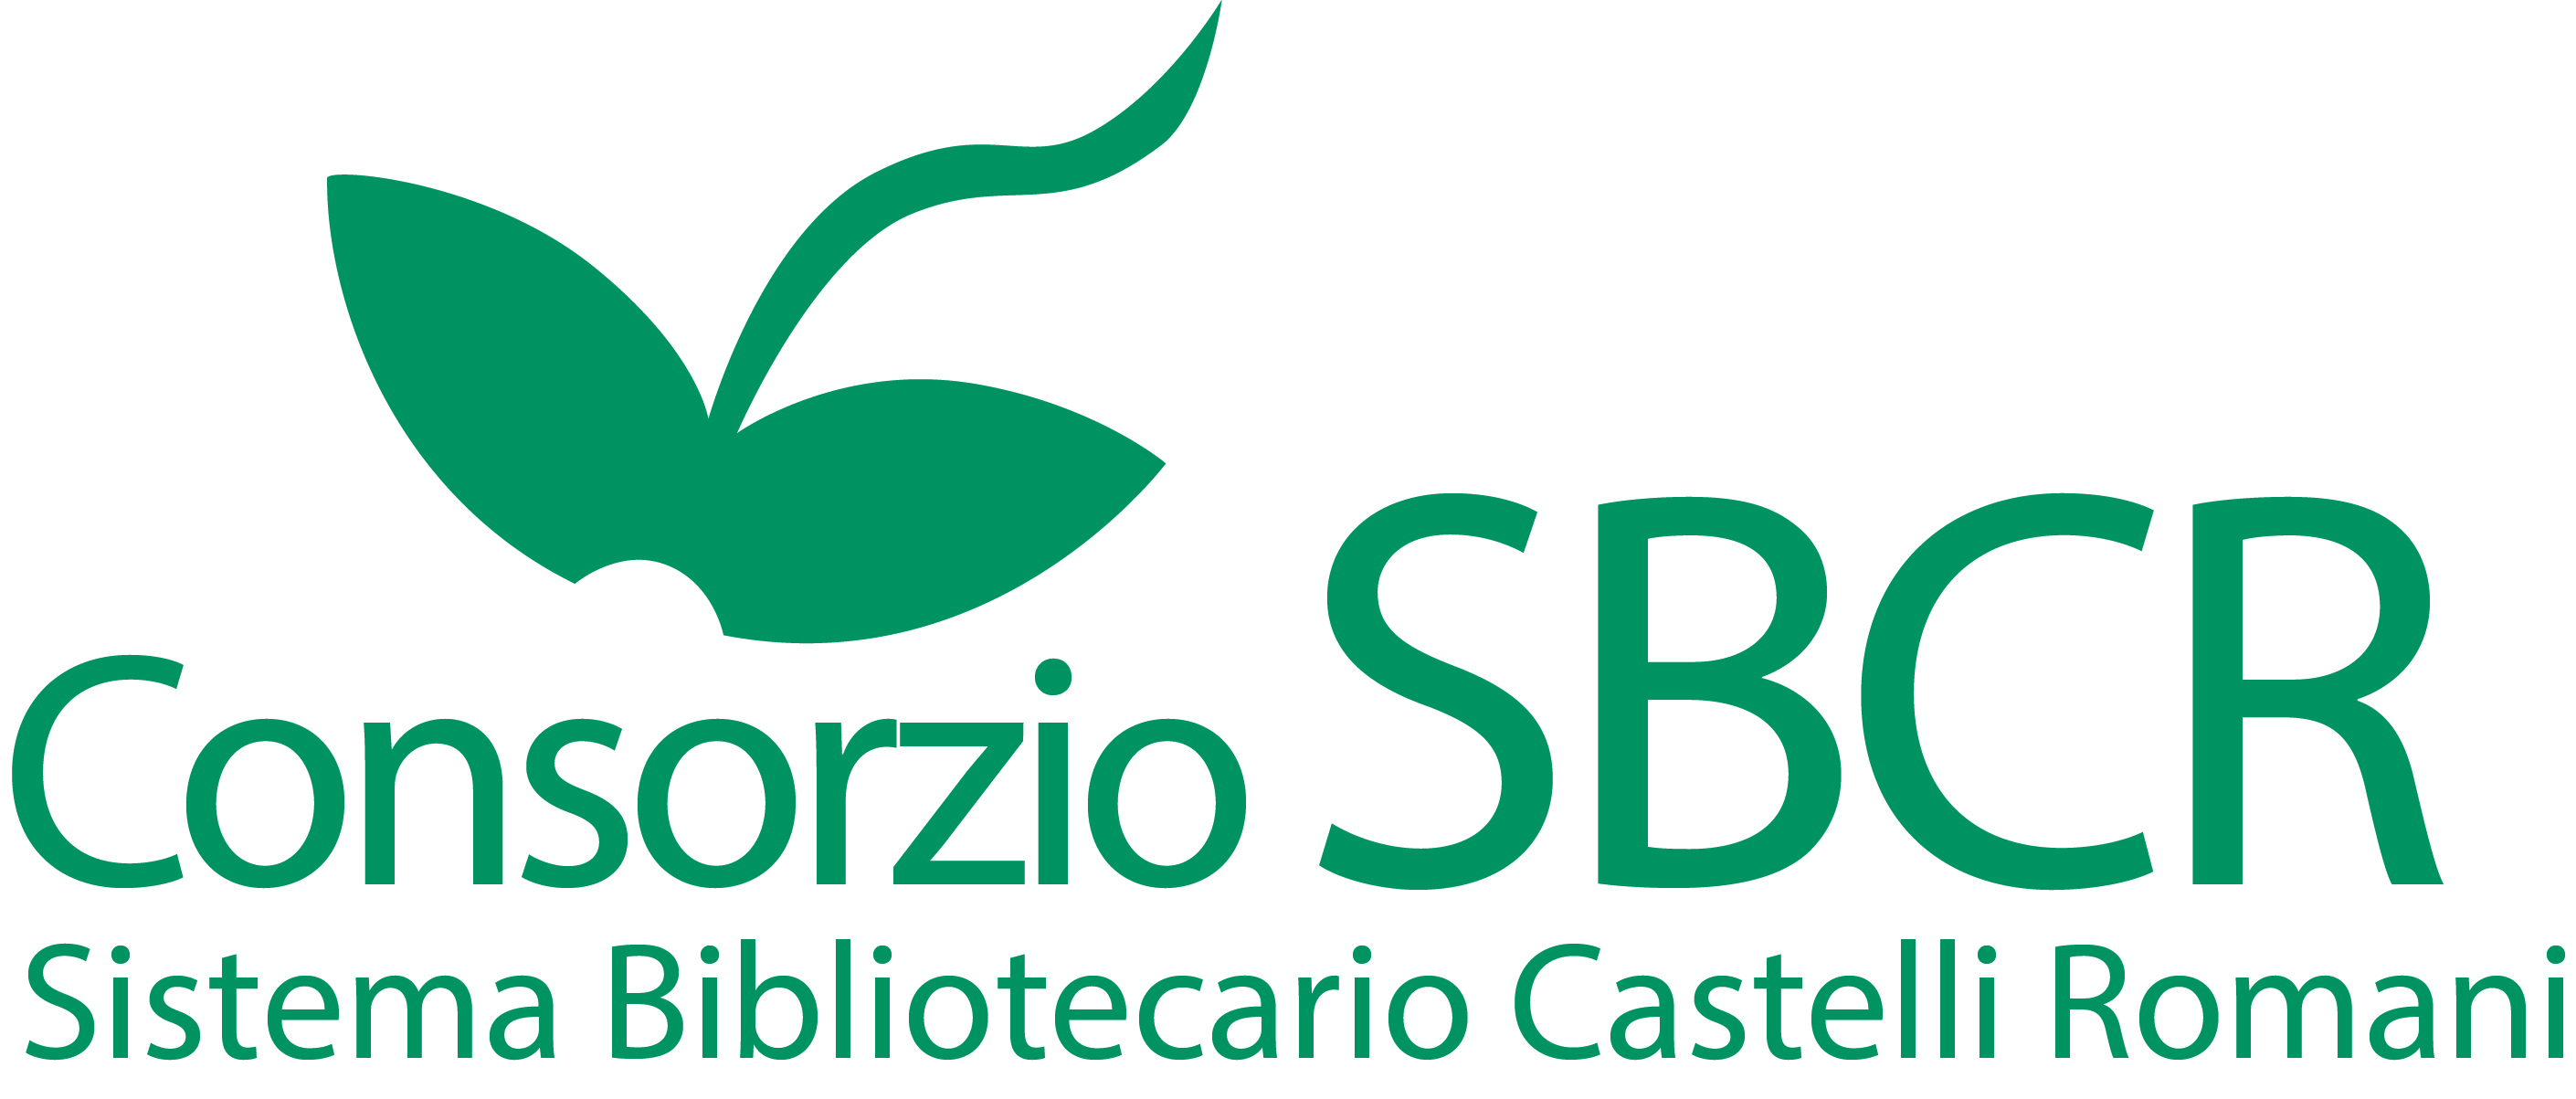 Consorzio SBCR Sistema Biblioteche dei Castelli Romani